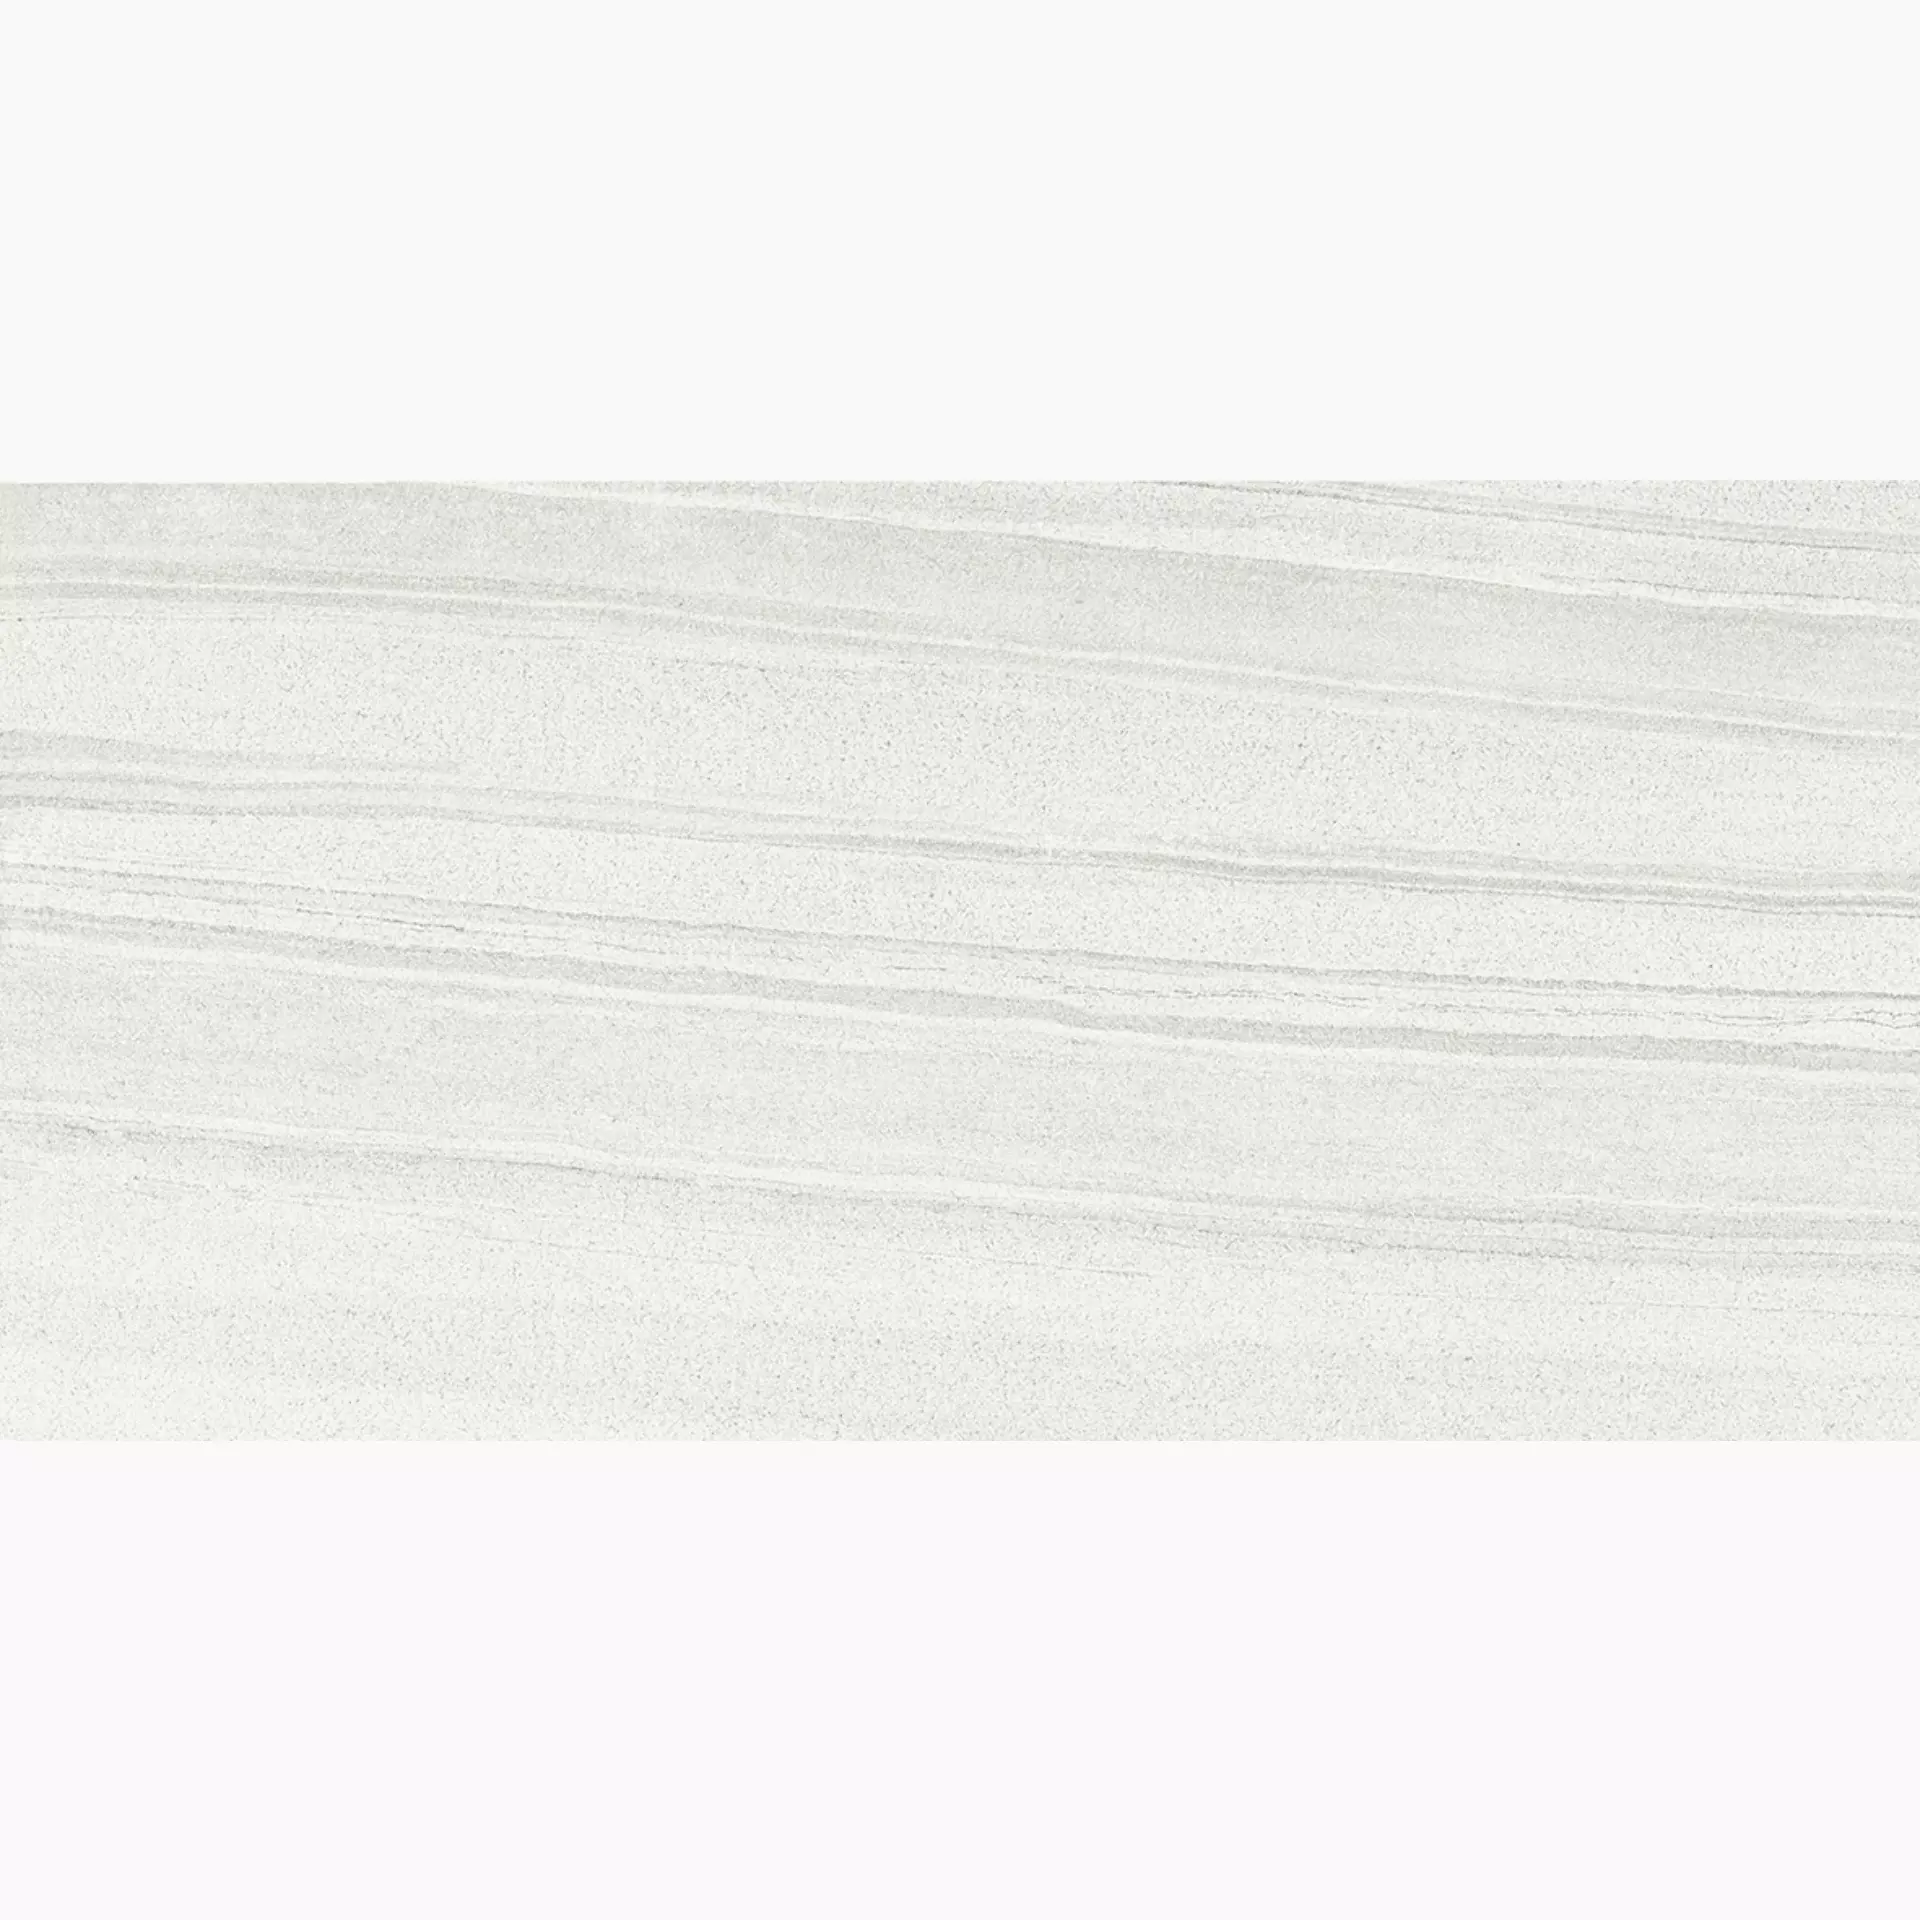 Provenza Evo-Q White Naturale E3V2 30x60cm rectified 9,5mm